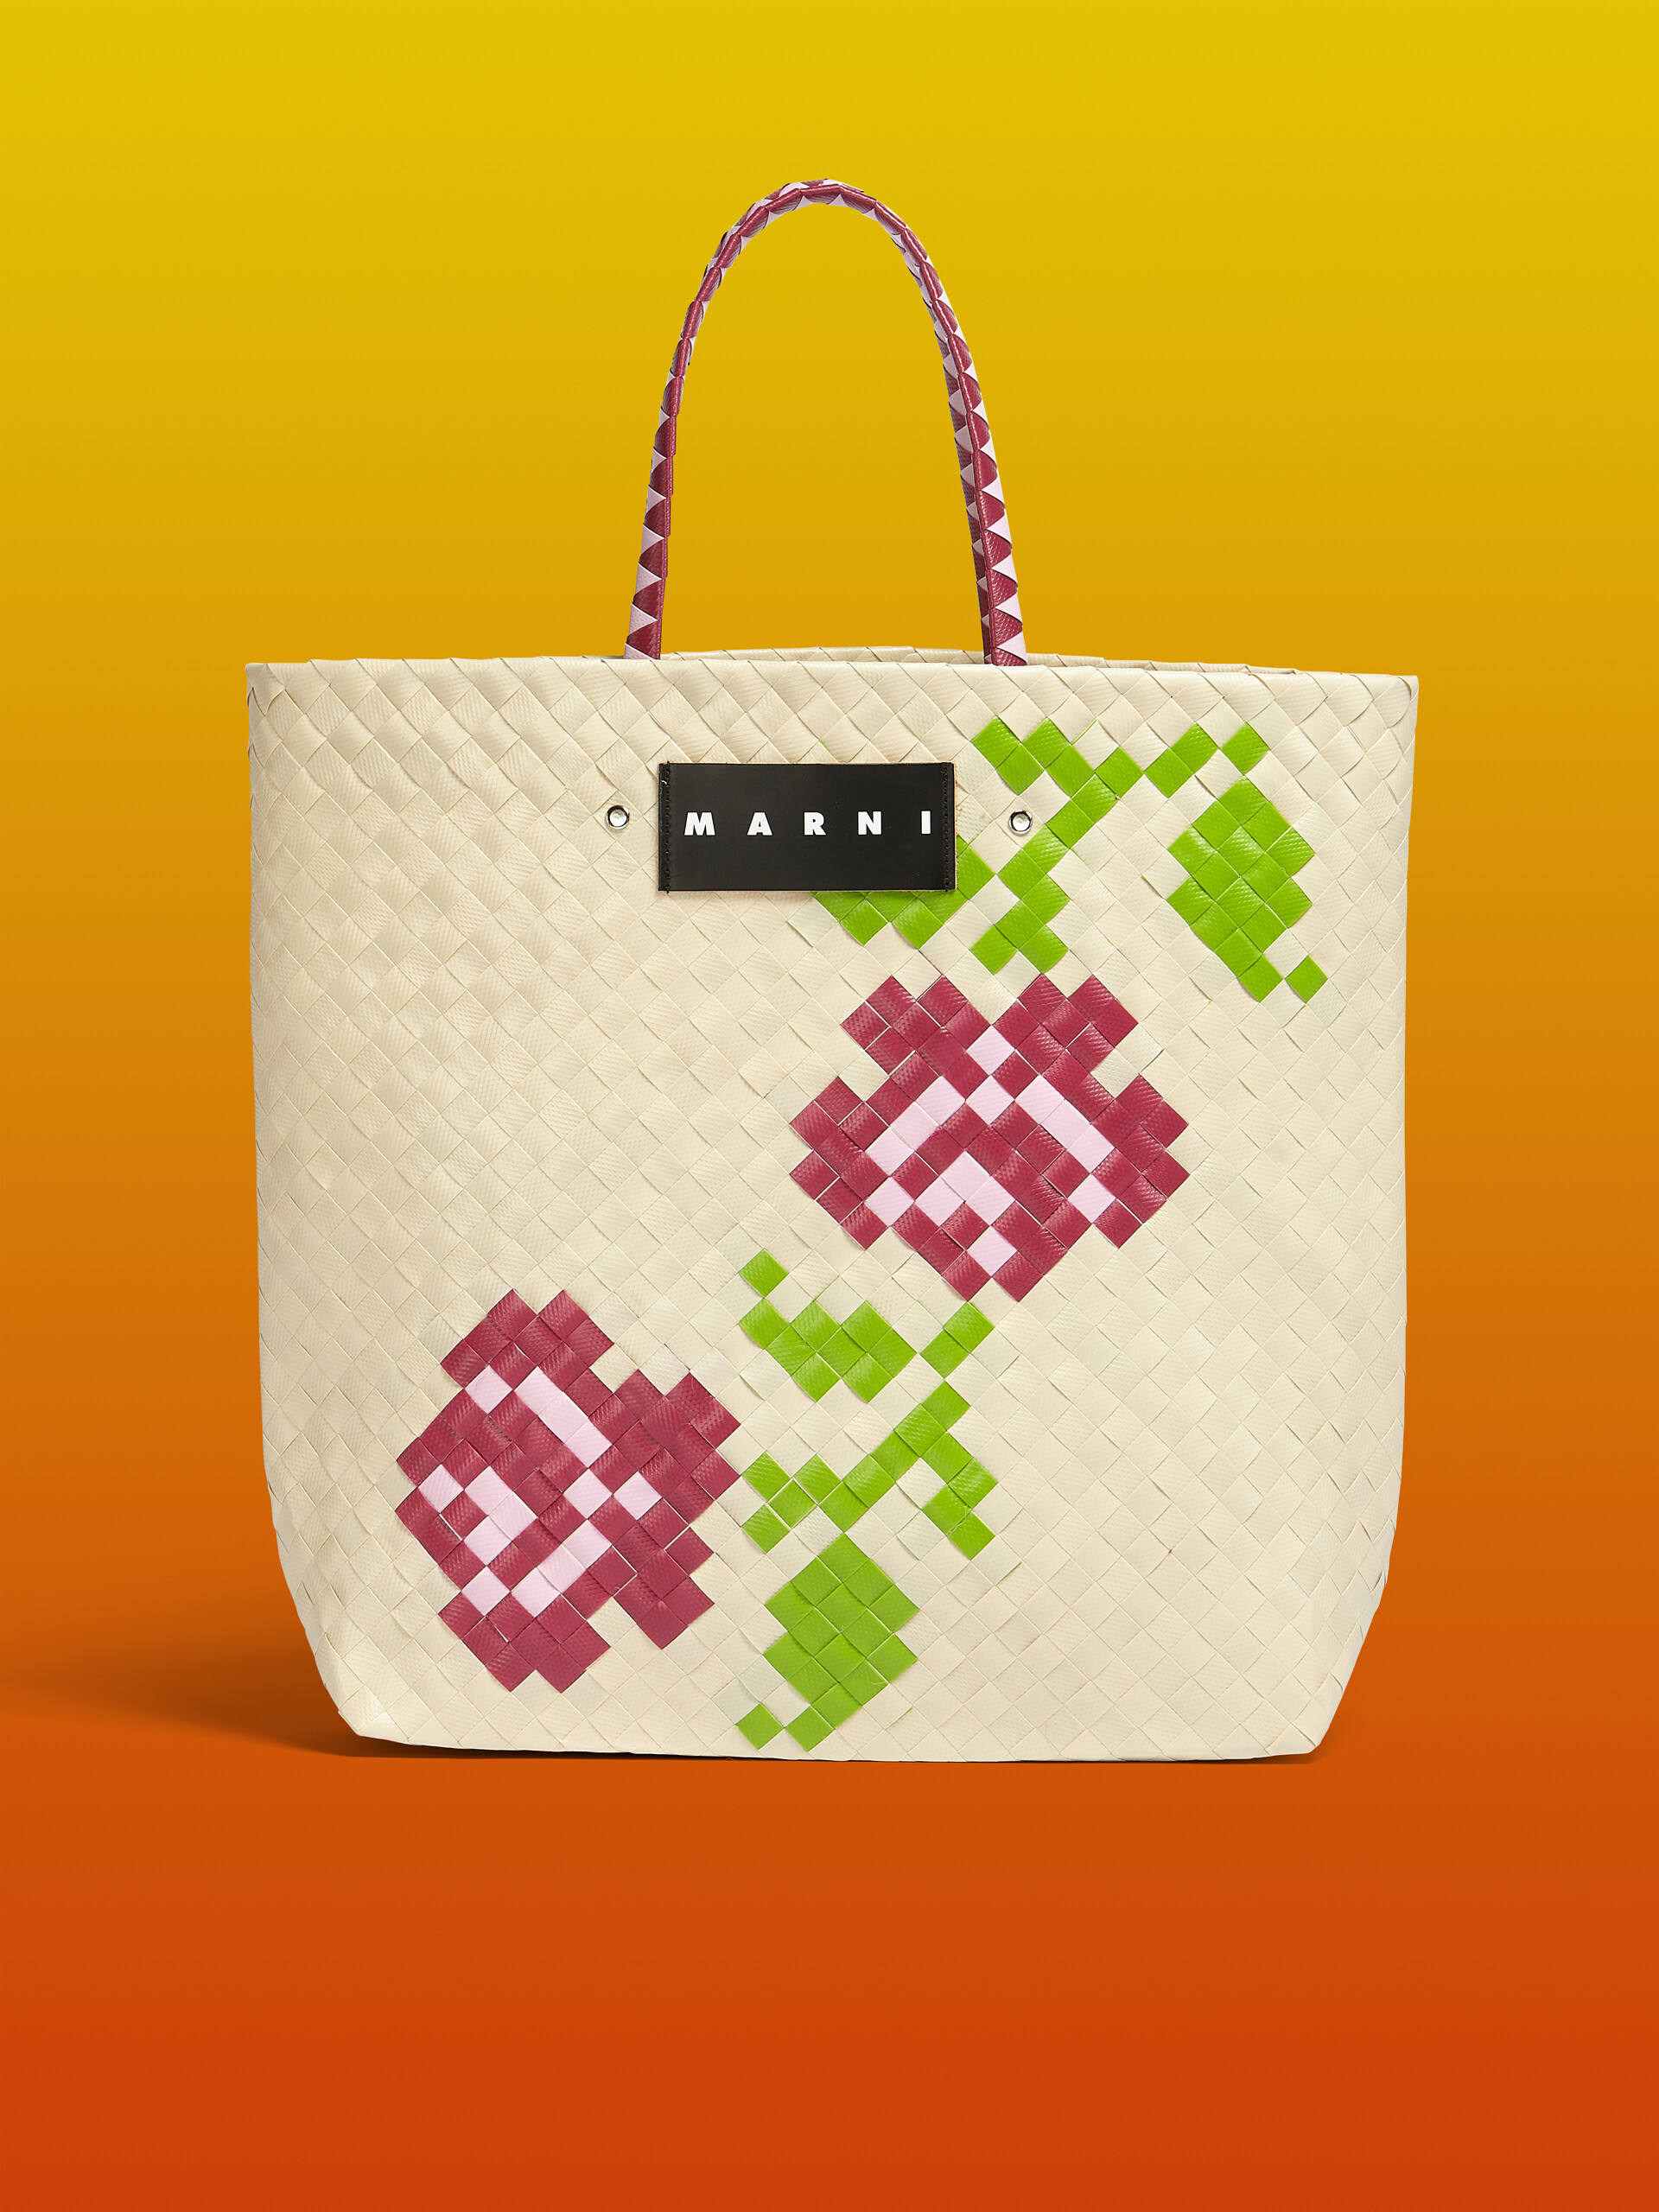 MARNI MARKET medium bag in white flower motif - Bags - Image 1